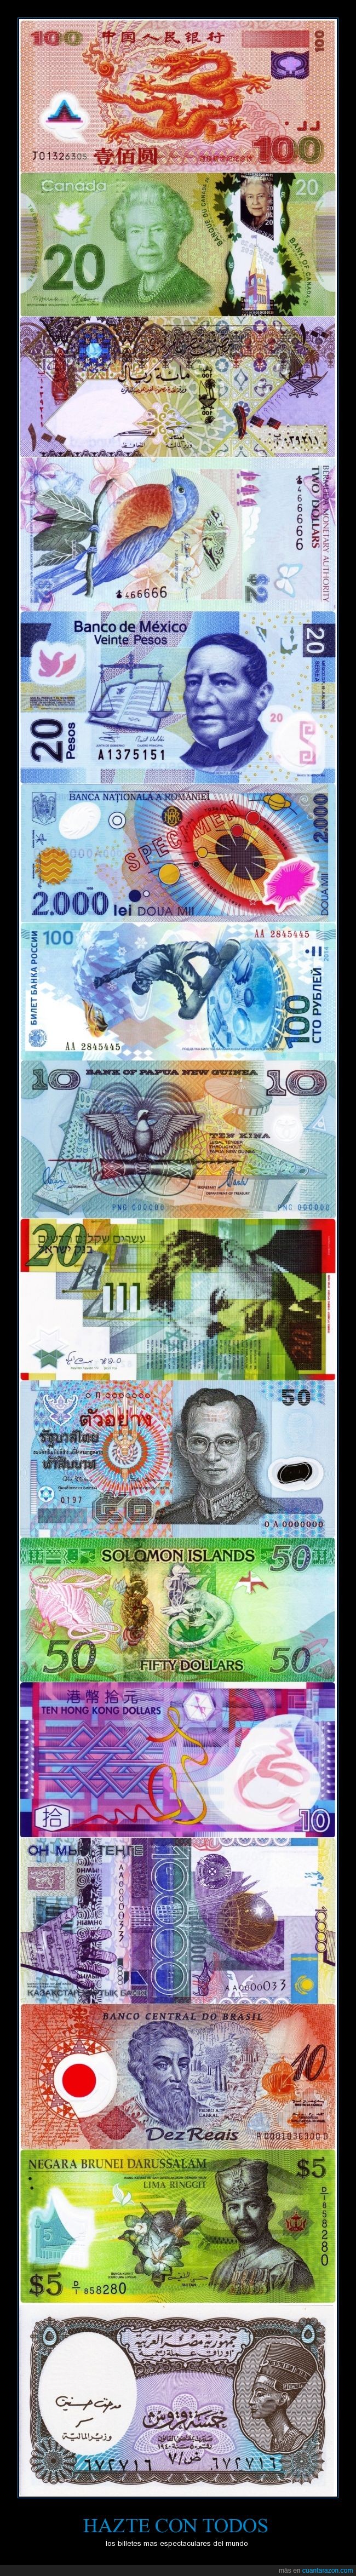 dólar canadiense,dólar de las bermudas,kina de papúa nueva guinea,lev rumano,nuevo shéquel israelí,peso mexicano,riyal qatarí,rublo ruso,yuan chino